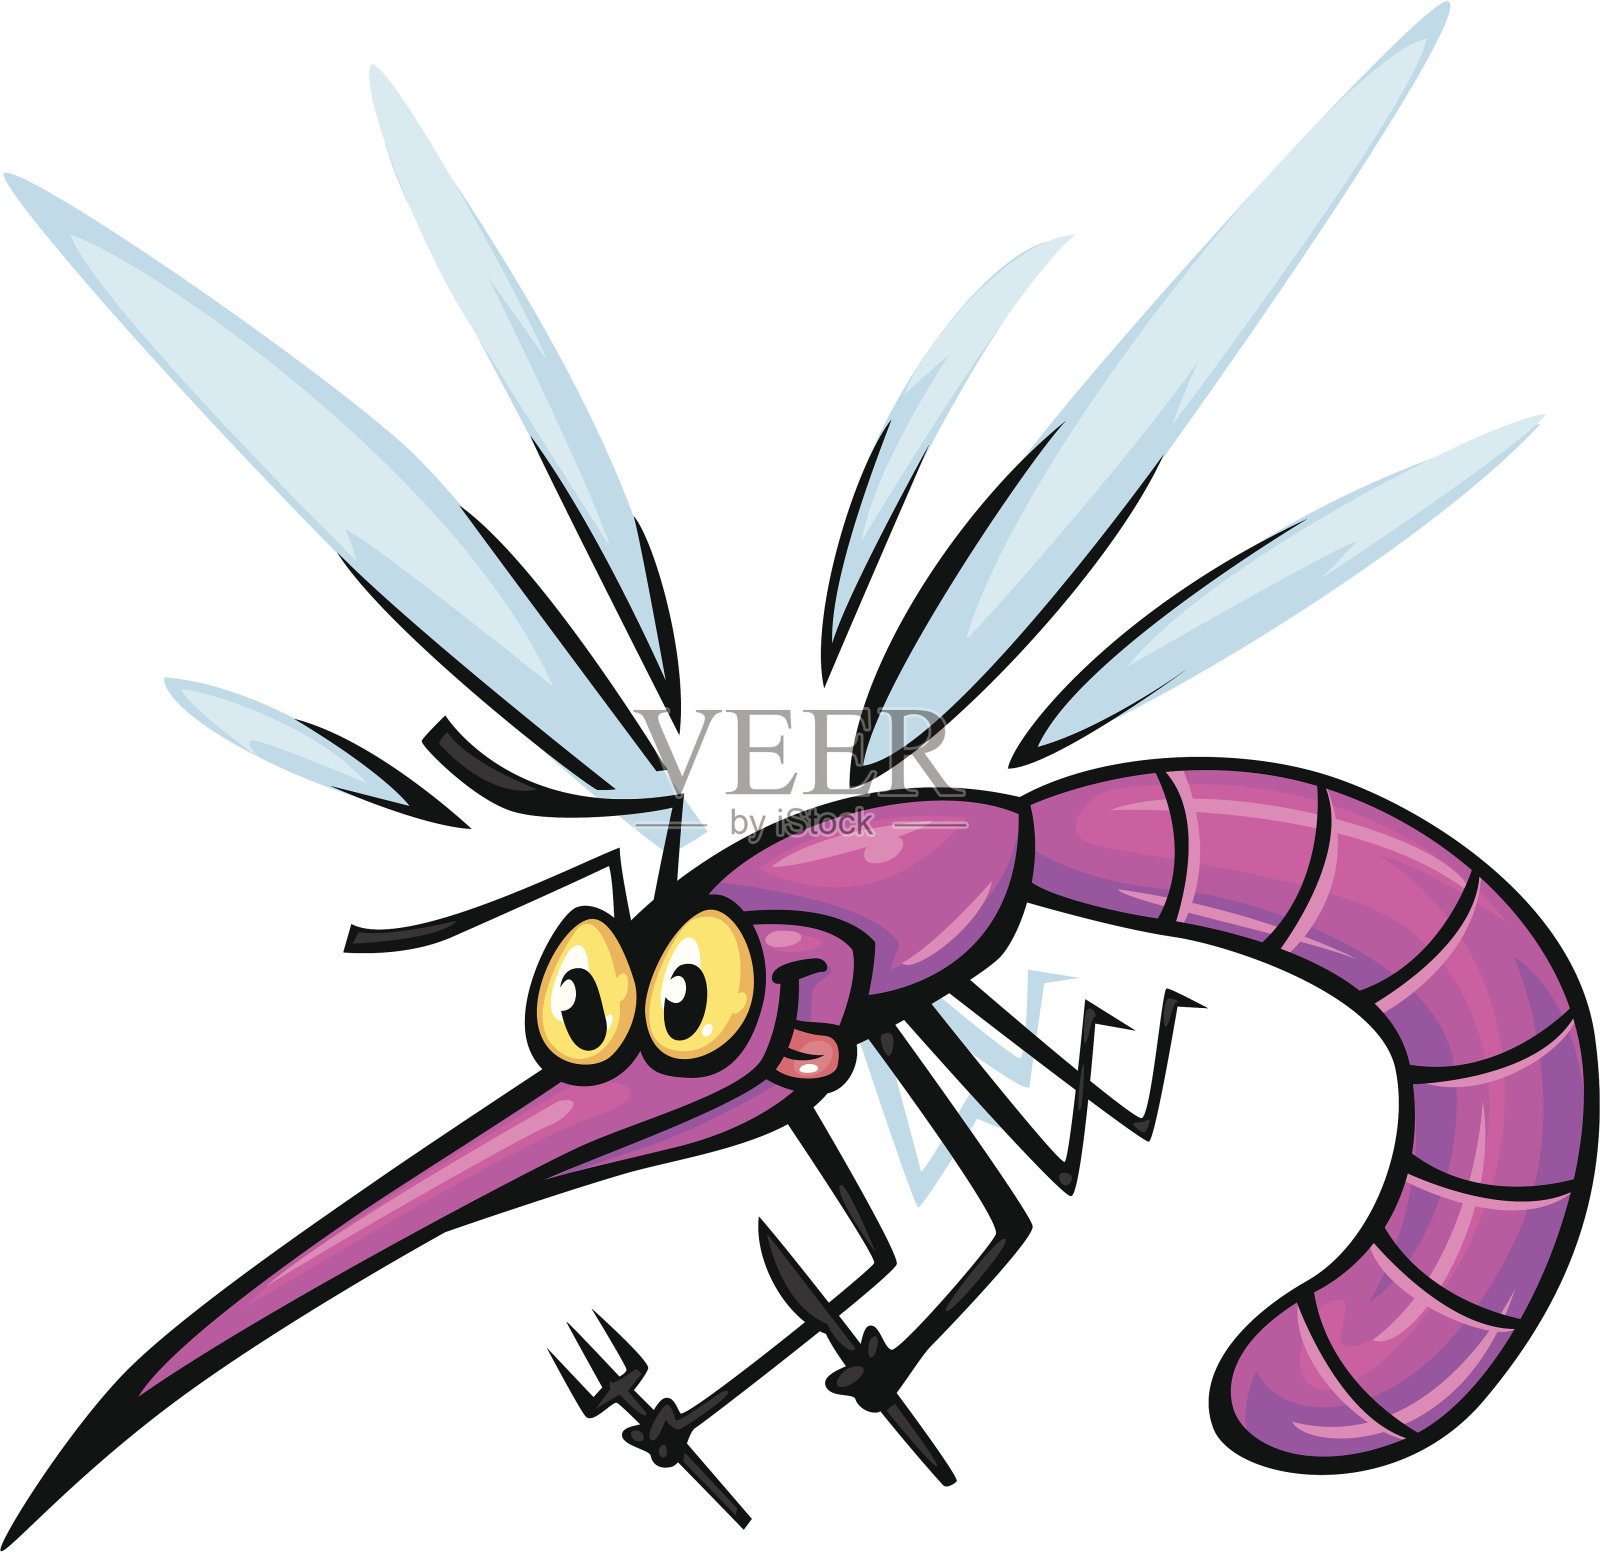 很多蚊咬男孩 库存例证. 插画 包括有 逗人喜爱, 昆虫, 飞行, 母狗, 投反对票, 热病, 图标, 敌意 - 153166201